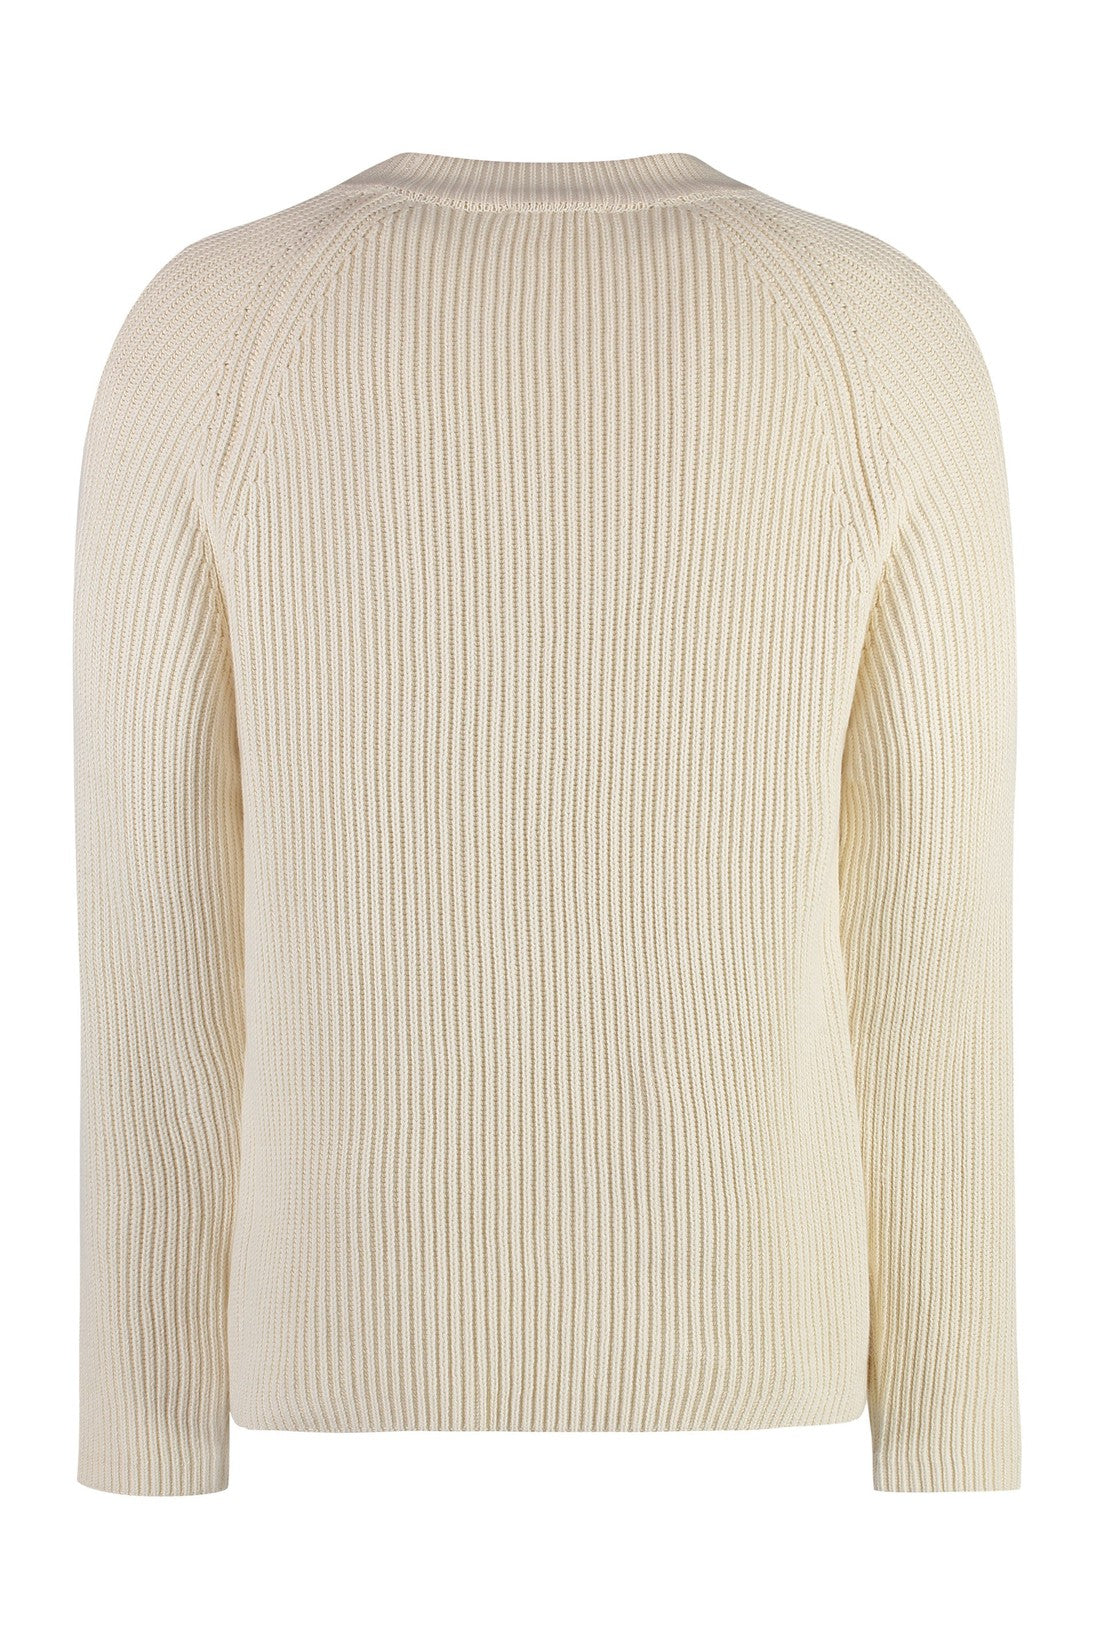 AMI PARIS-OUTLET-SALE-Cotton-wool blend sweater-ARCHIVIST